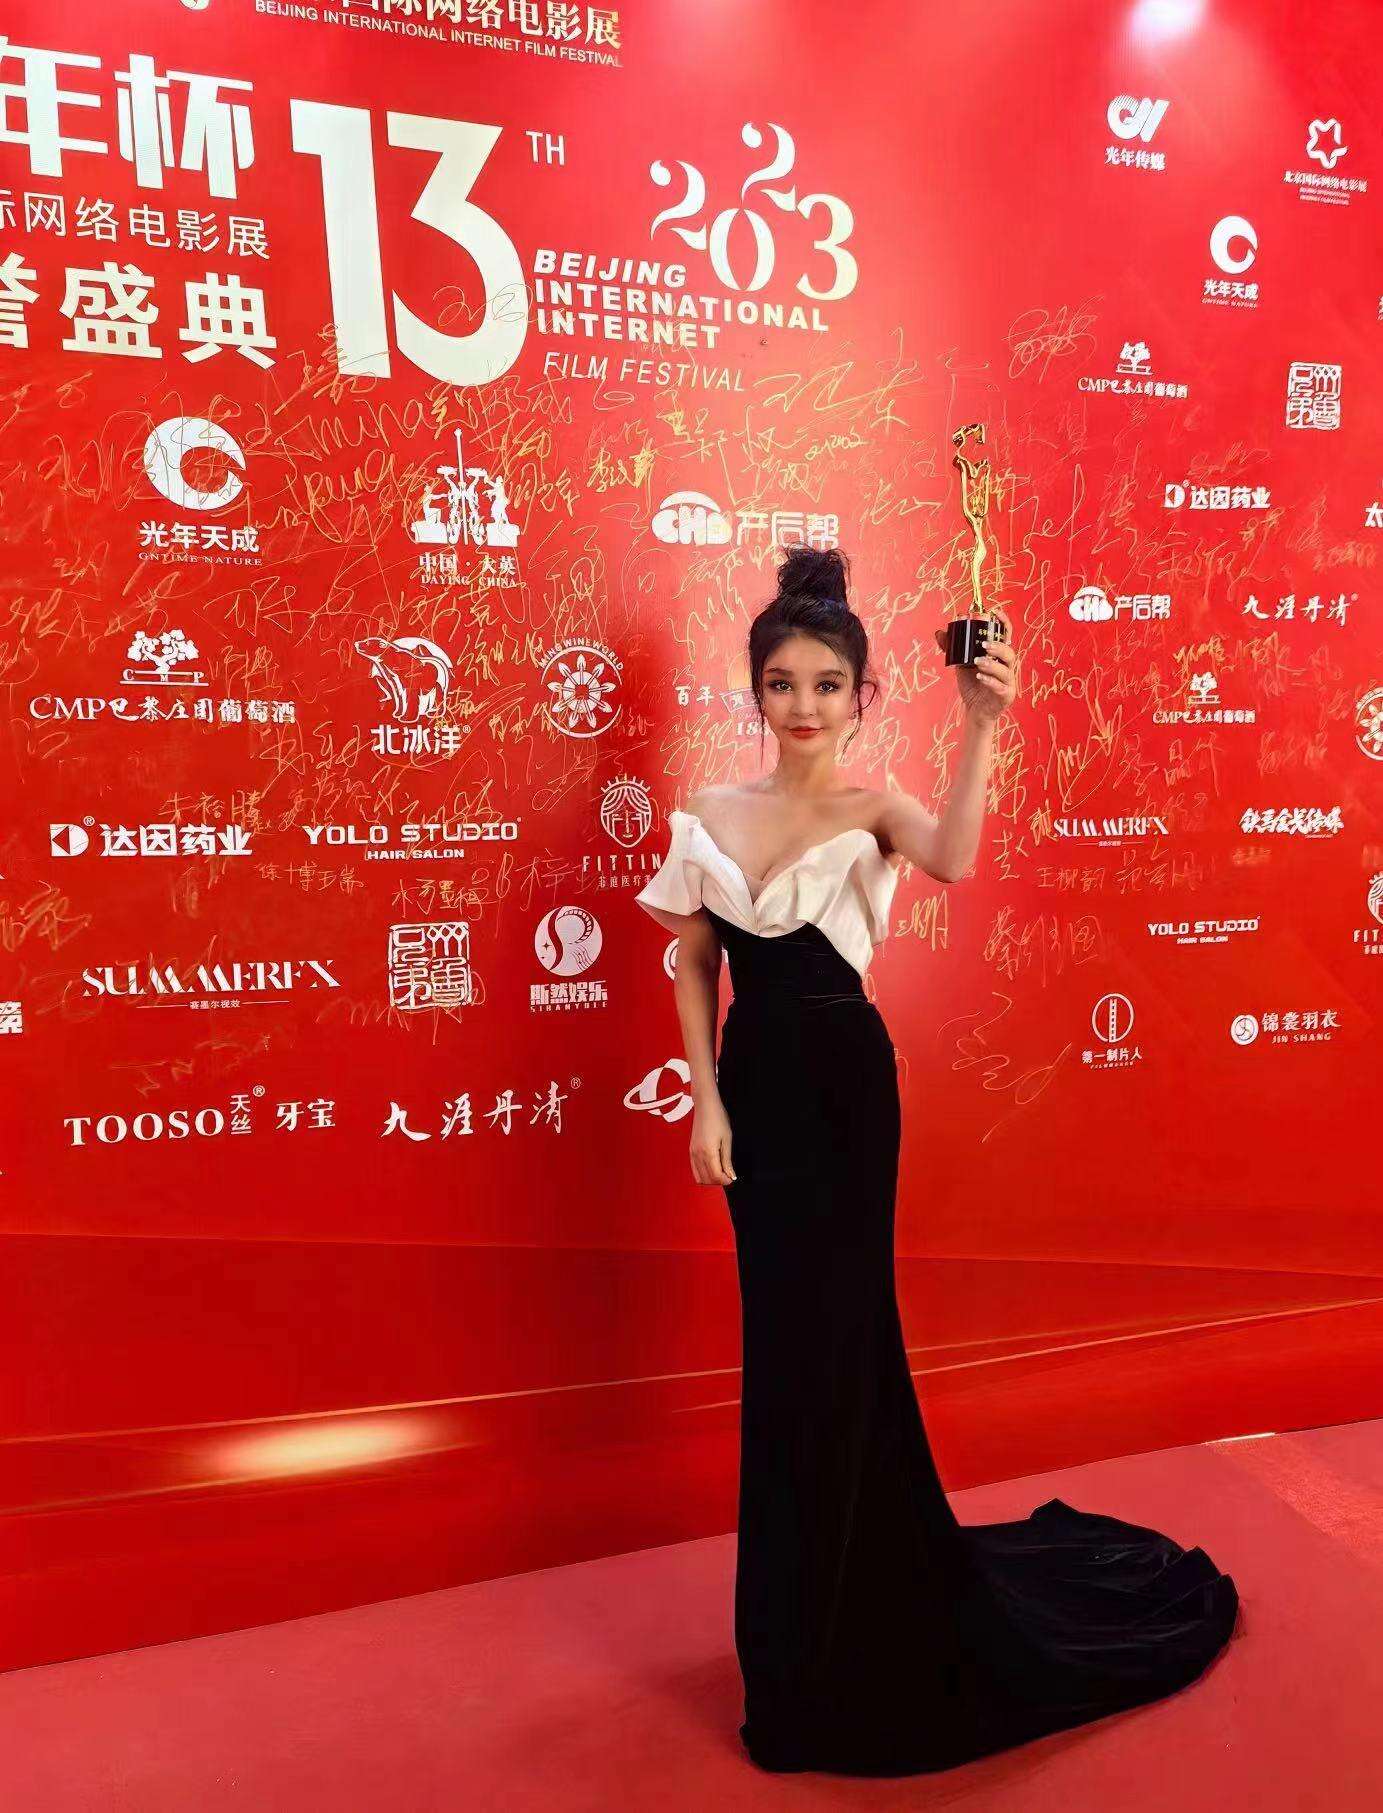 时尚设计师沈美琪应邀出席第十三届北京国际网络电影节